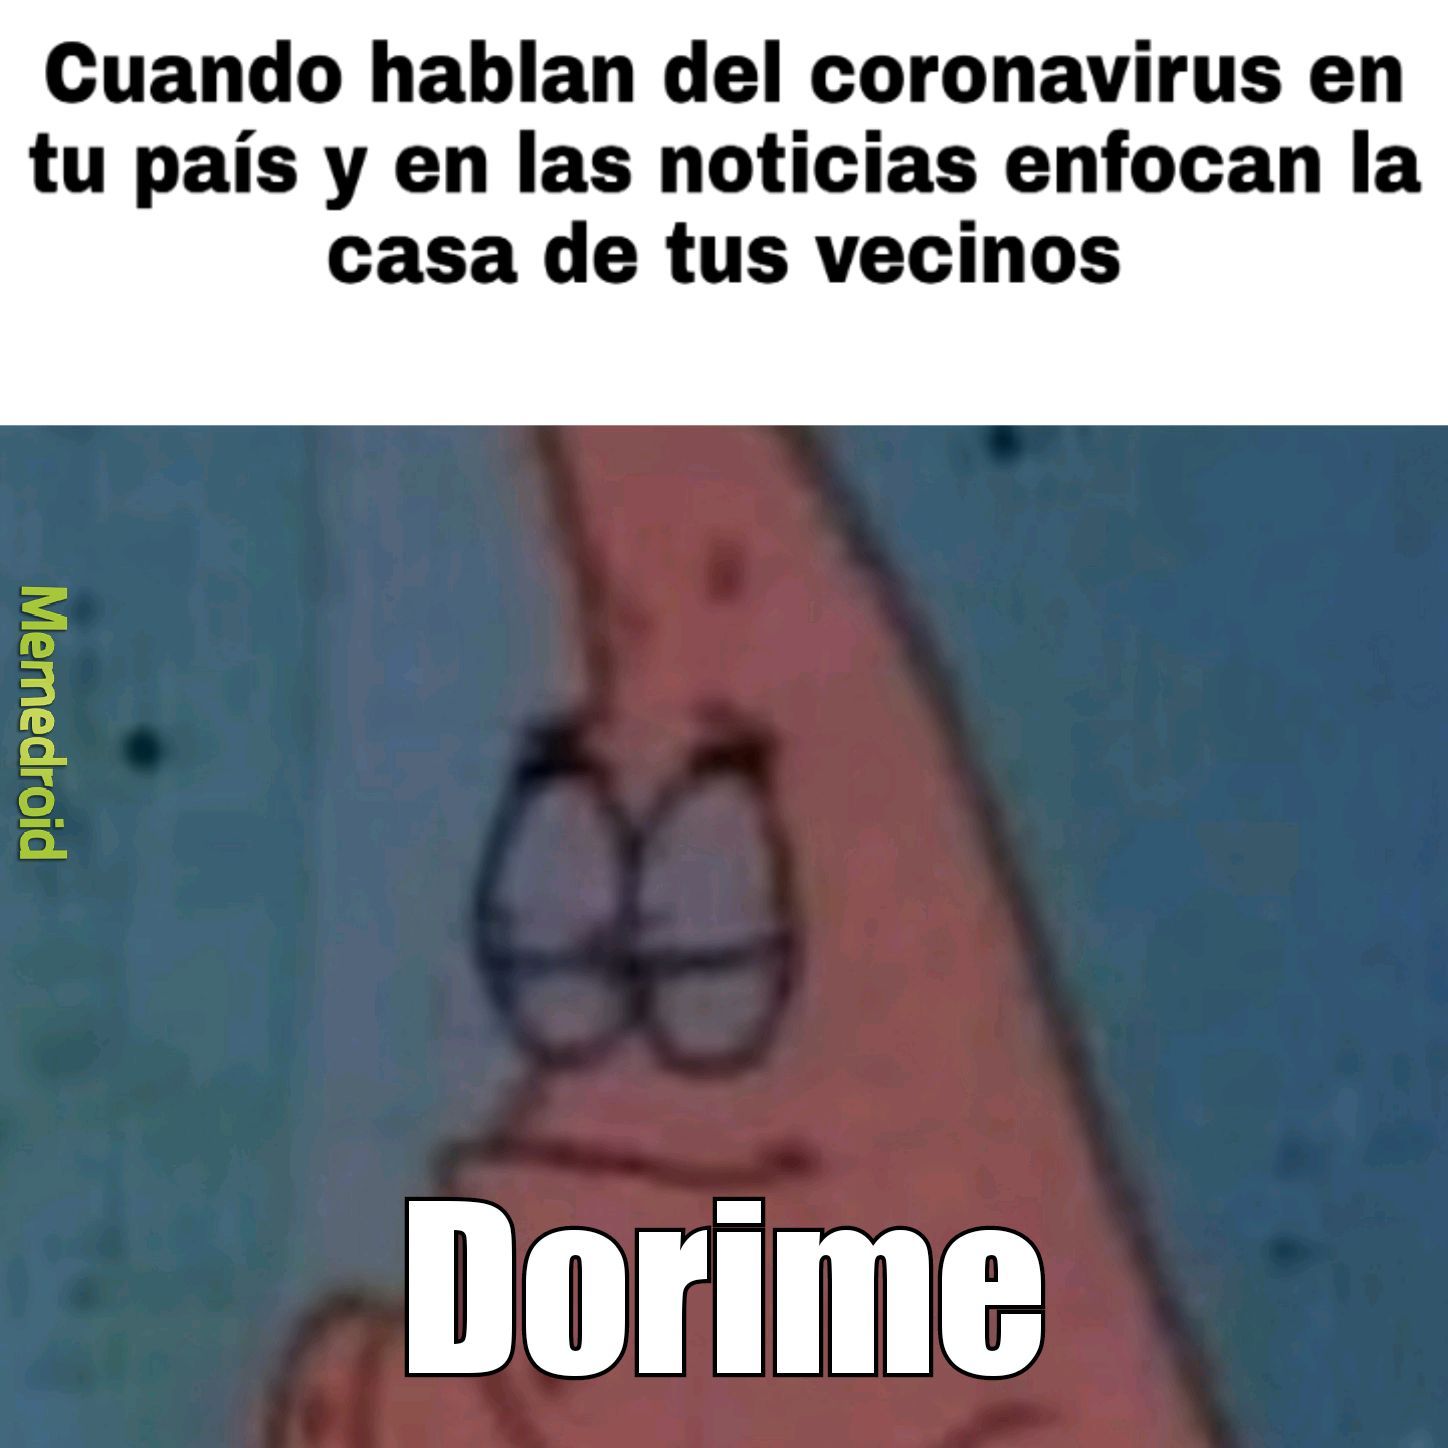 Patricio Dorime covid 19 - meme